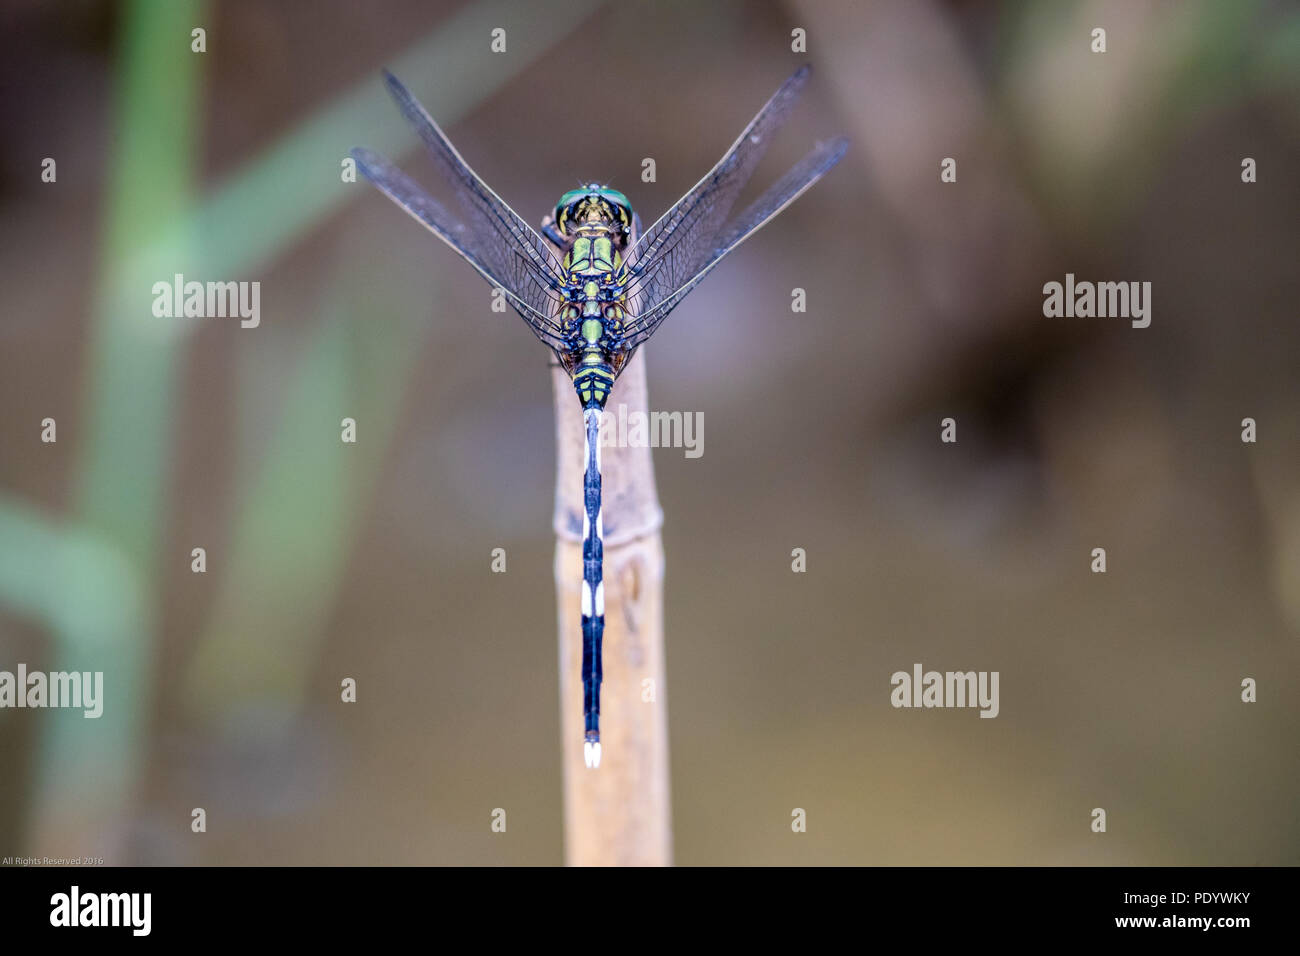 Ritratto di libellula - Verde skimmer Foto Stock